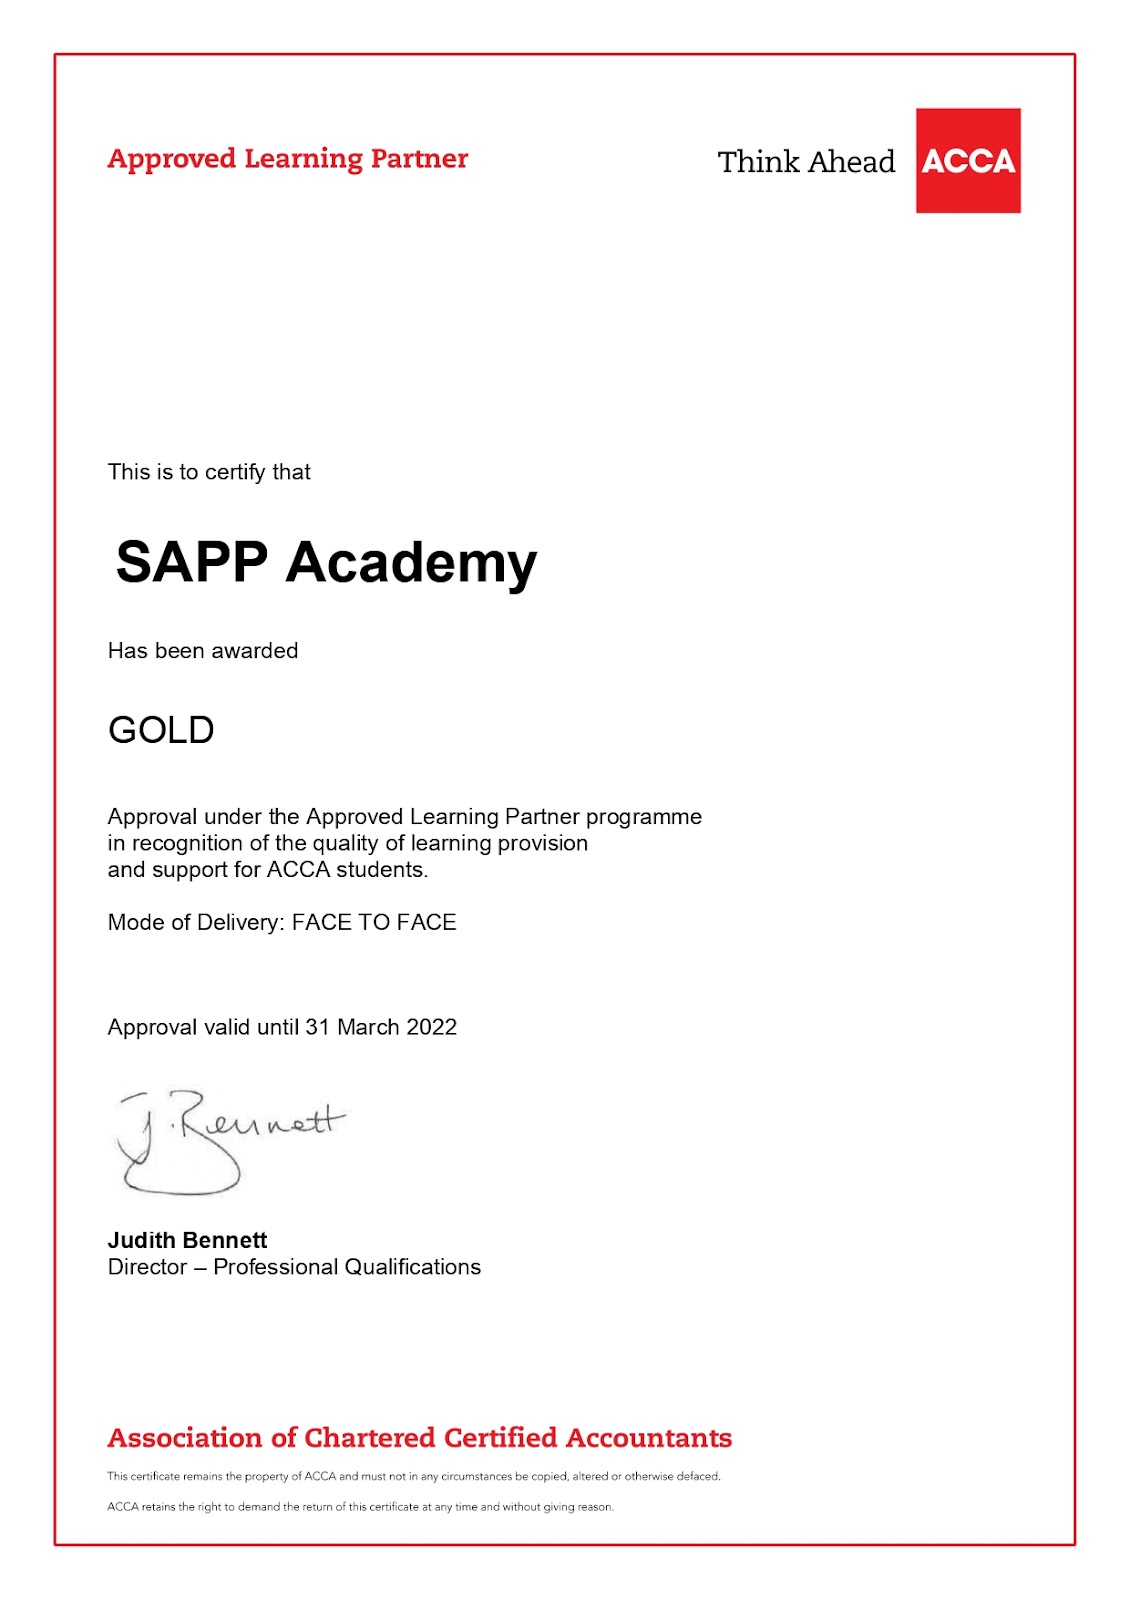 SAPP Academy đã liên tục được công nhận là Đối tác đào tạo chuẩn Vàng của Hiệp hội Kế toán công chứng Anh quốc (ACCA)